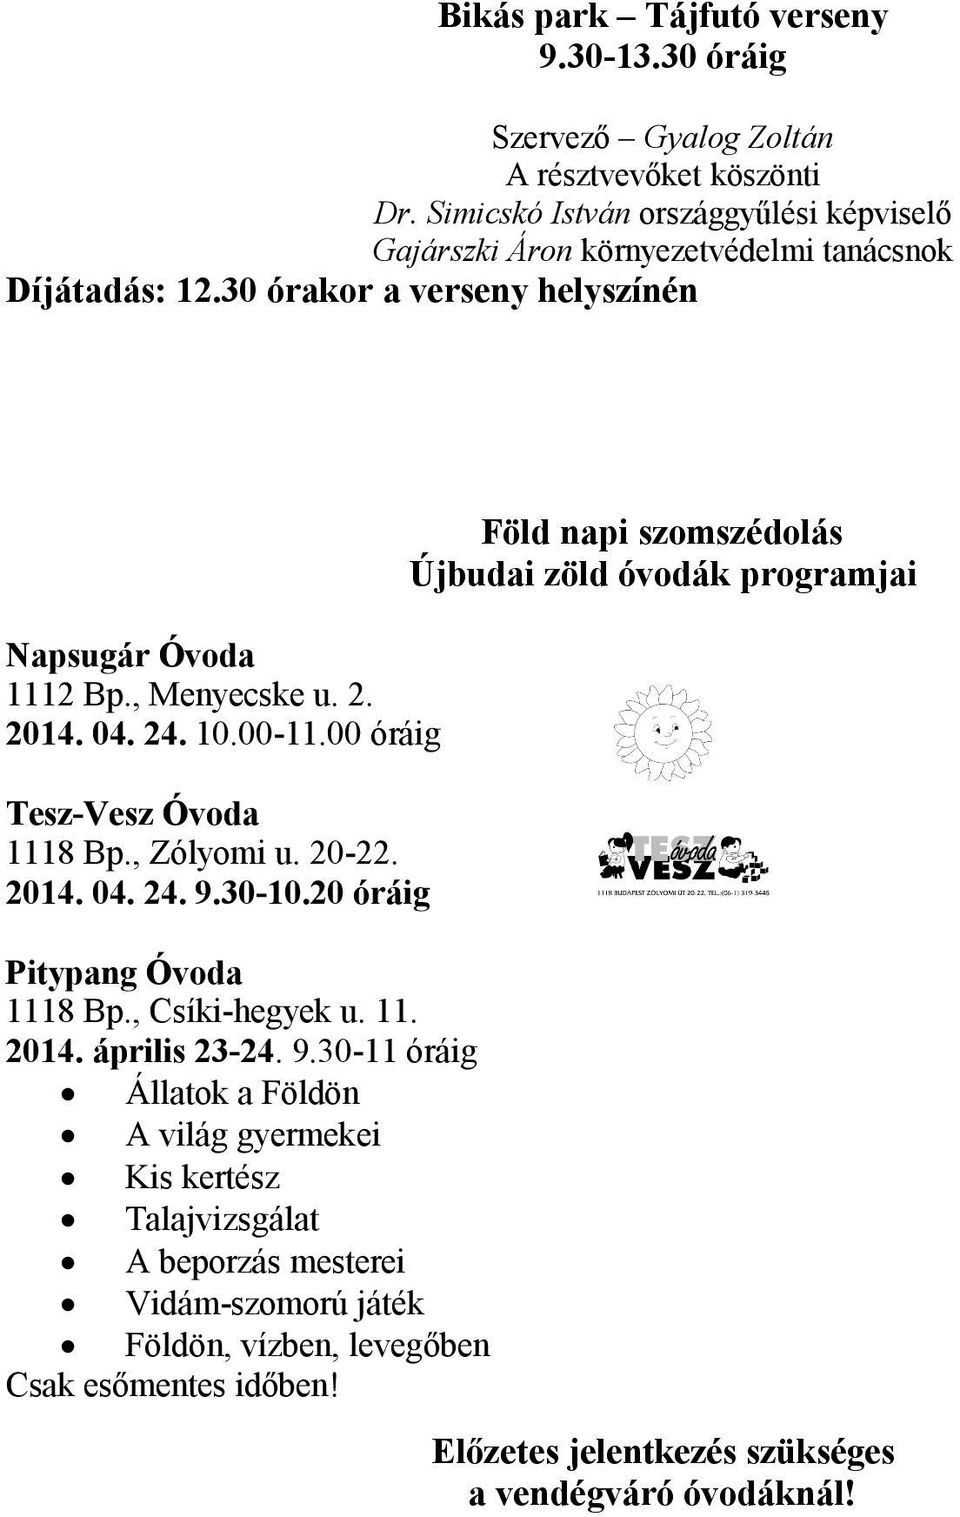 24. 10.00-11.00 óráig Tesz-Vesz Óvoda 1118 Bp., Zólyomi u. 20-22. 2014. 04. 24. 9.